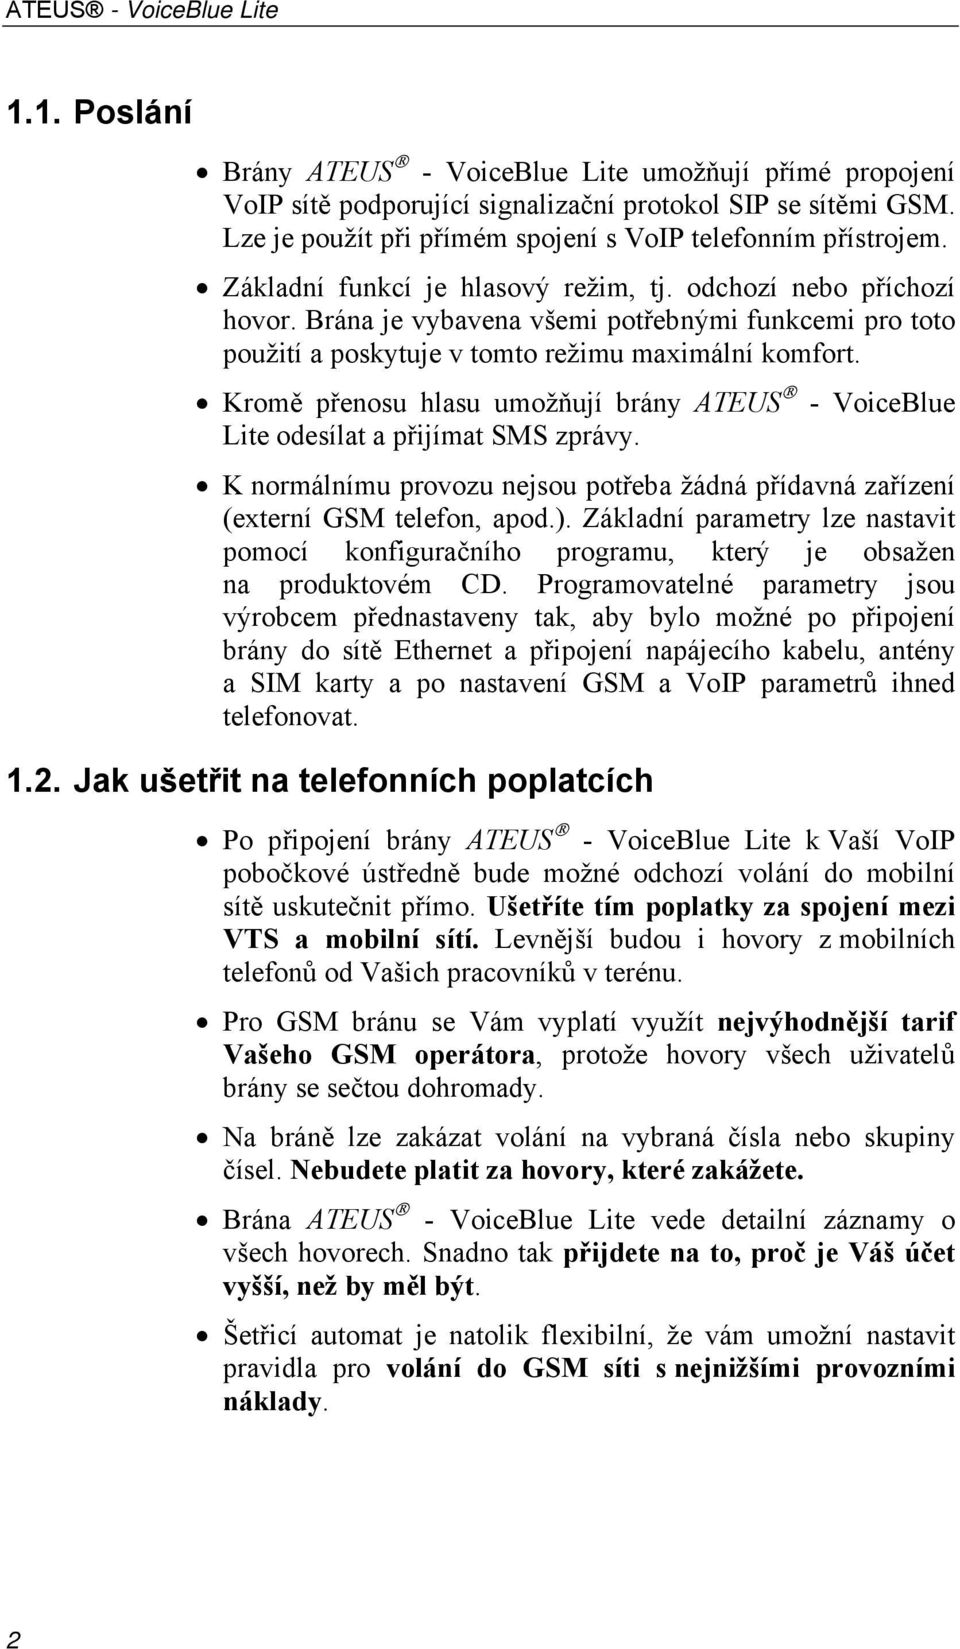 Kromě přenosu hlasu umožňují brány ATEUS - VoiceBlue Lite odesílat a přijímat SMS zprávy. K normálnímu provozu nejsou potřeba žádná přídavná zařízení (externí GSM telefon, apod.).